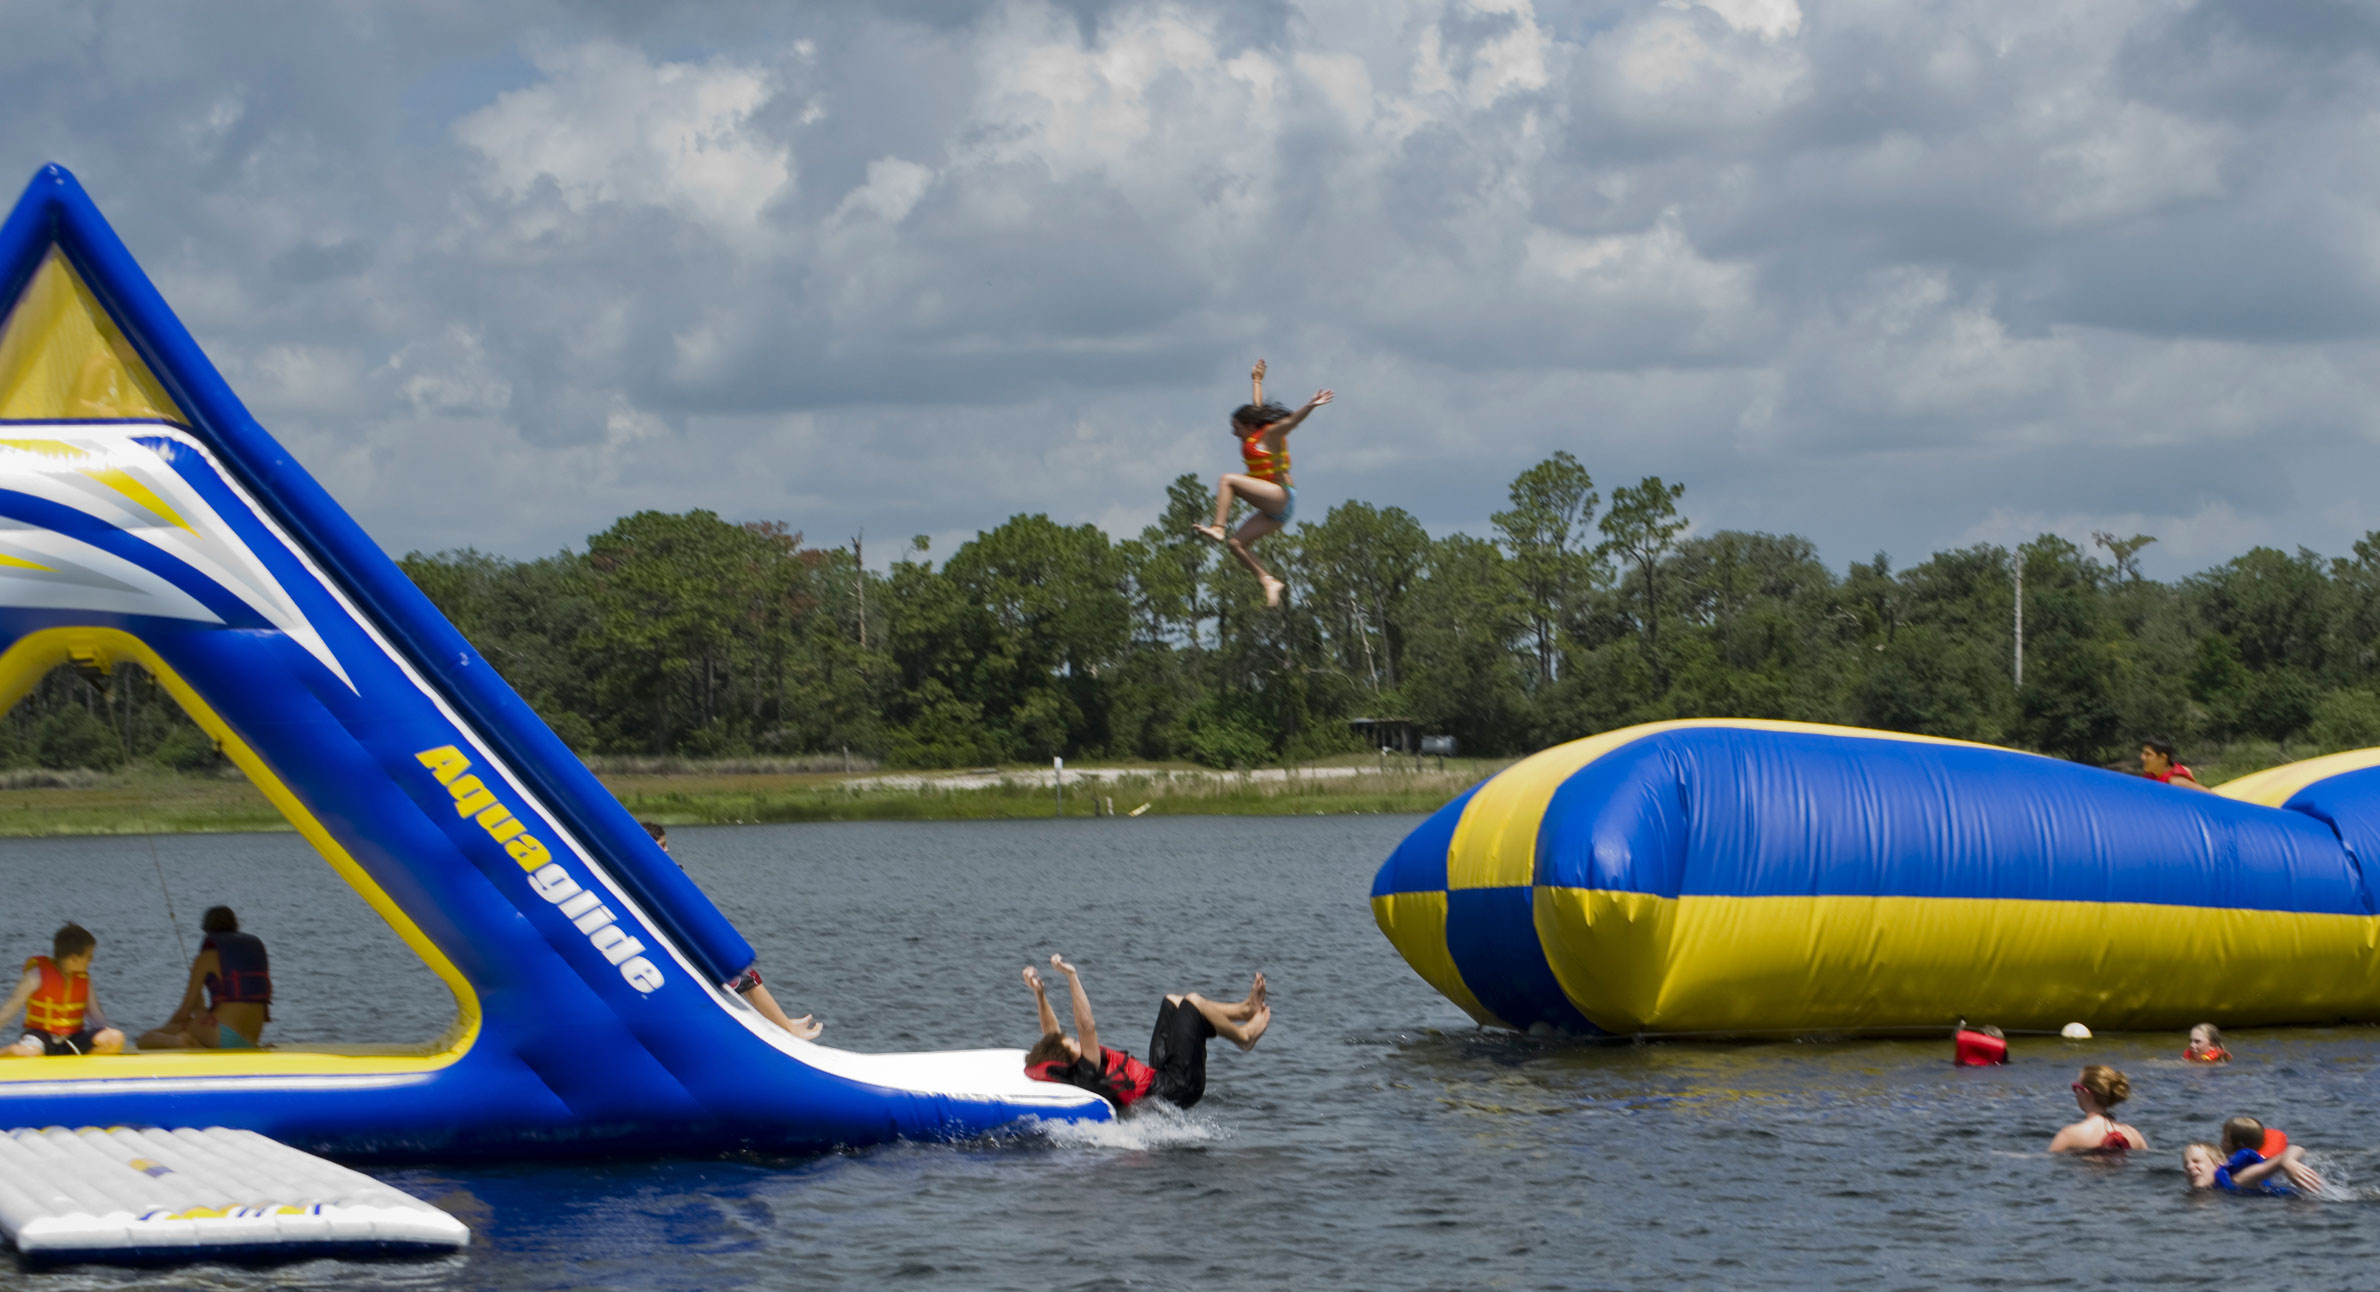 Kids Enjoying Fun on the lake at Summer Camp